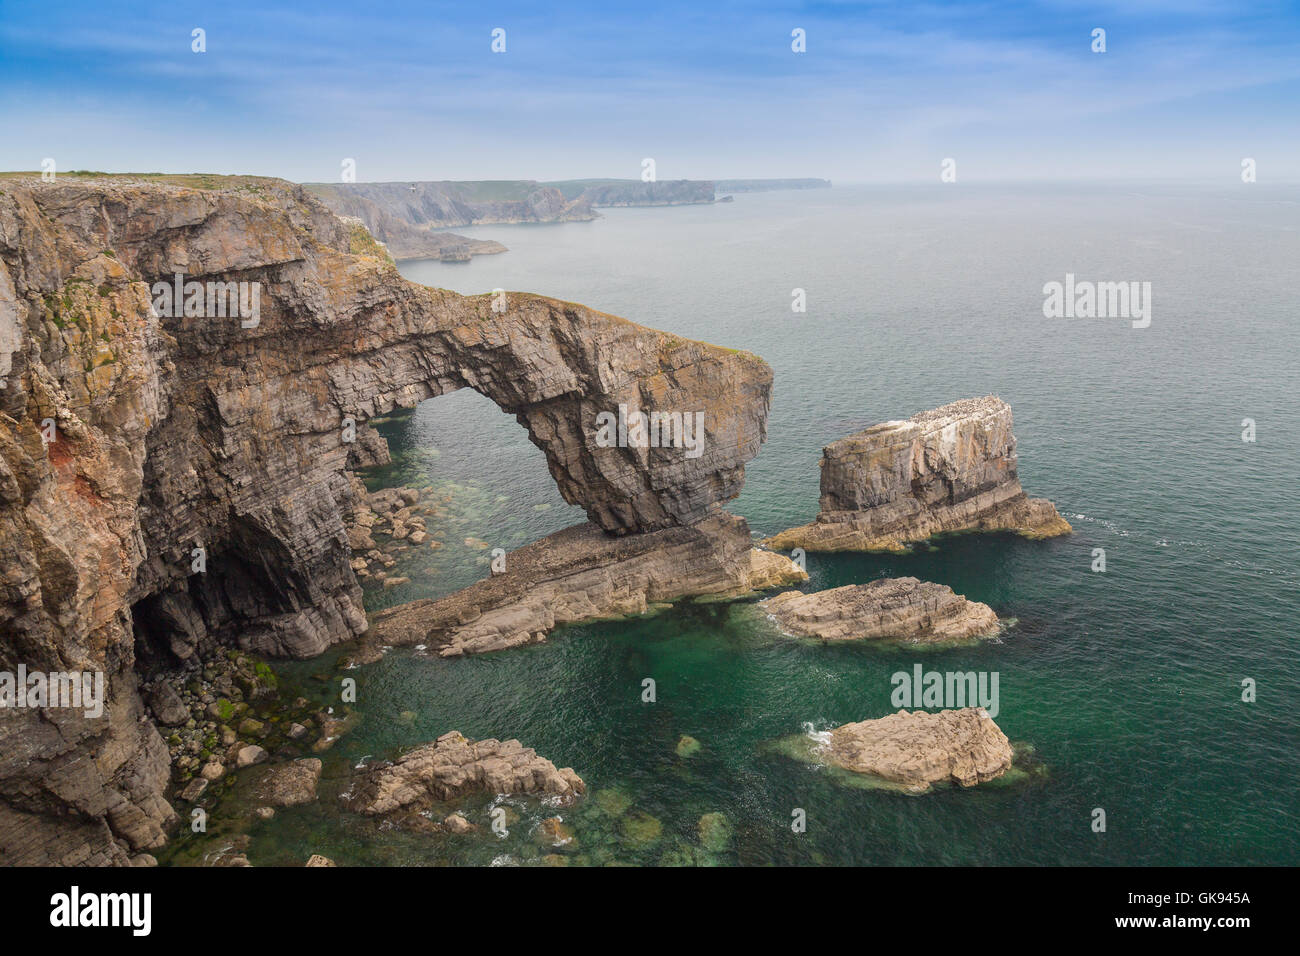 El Puente Verde de Gales, un arco natural en el Parque Nacional de la costa de Pembrokeshire, Gales, Reino Unido Foto de stock